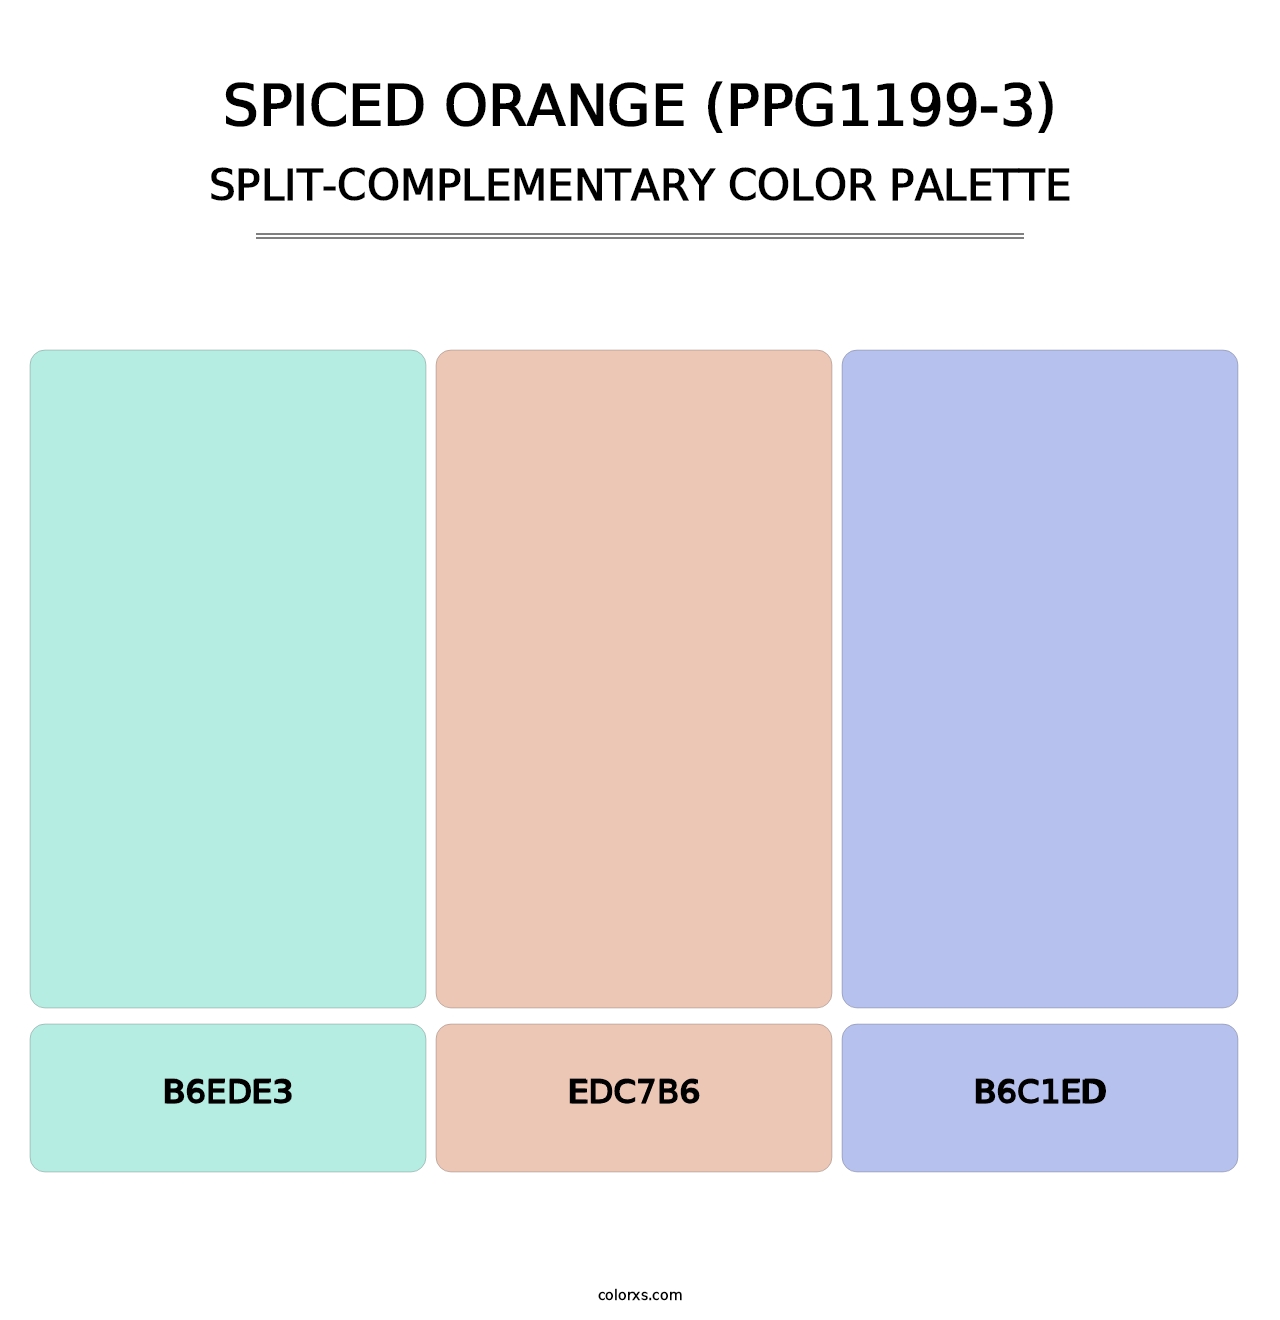 Spiced Orange (PPG1199-3) - Split-Complementary Color Palette